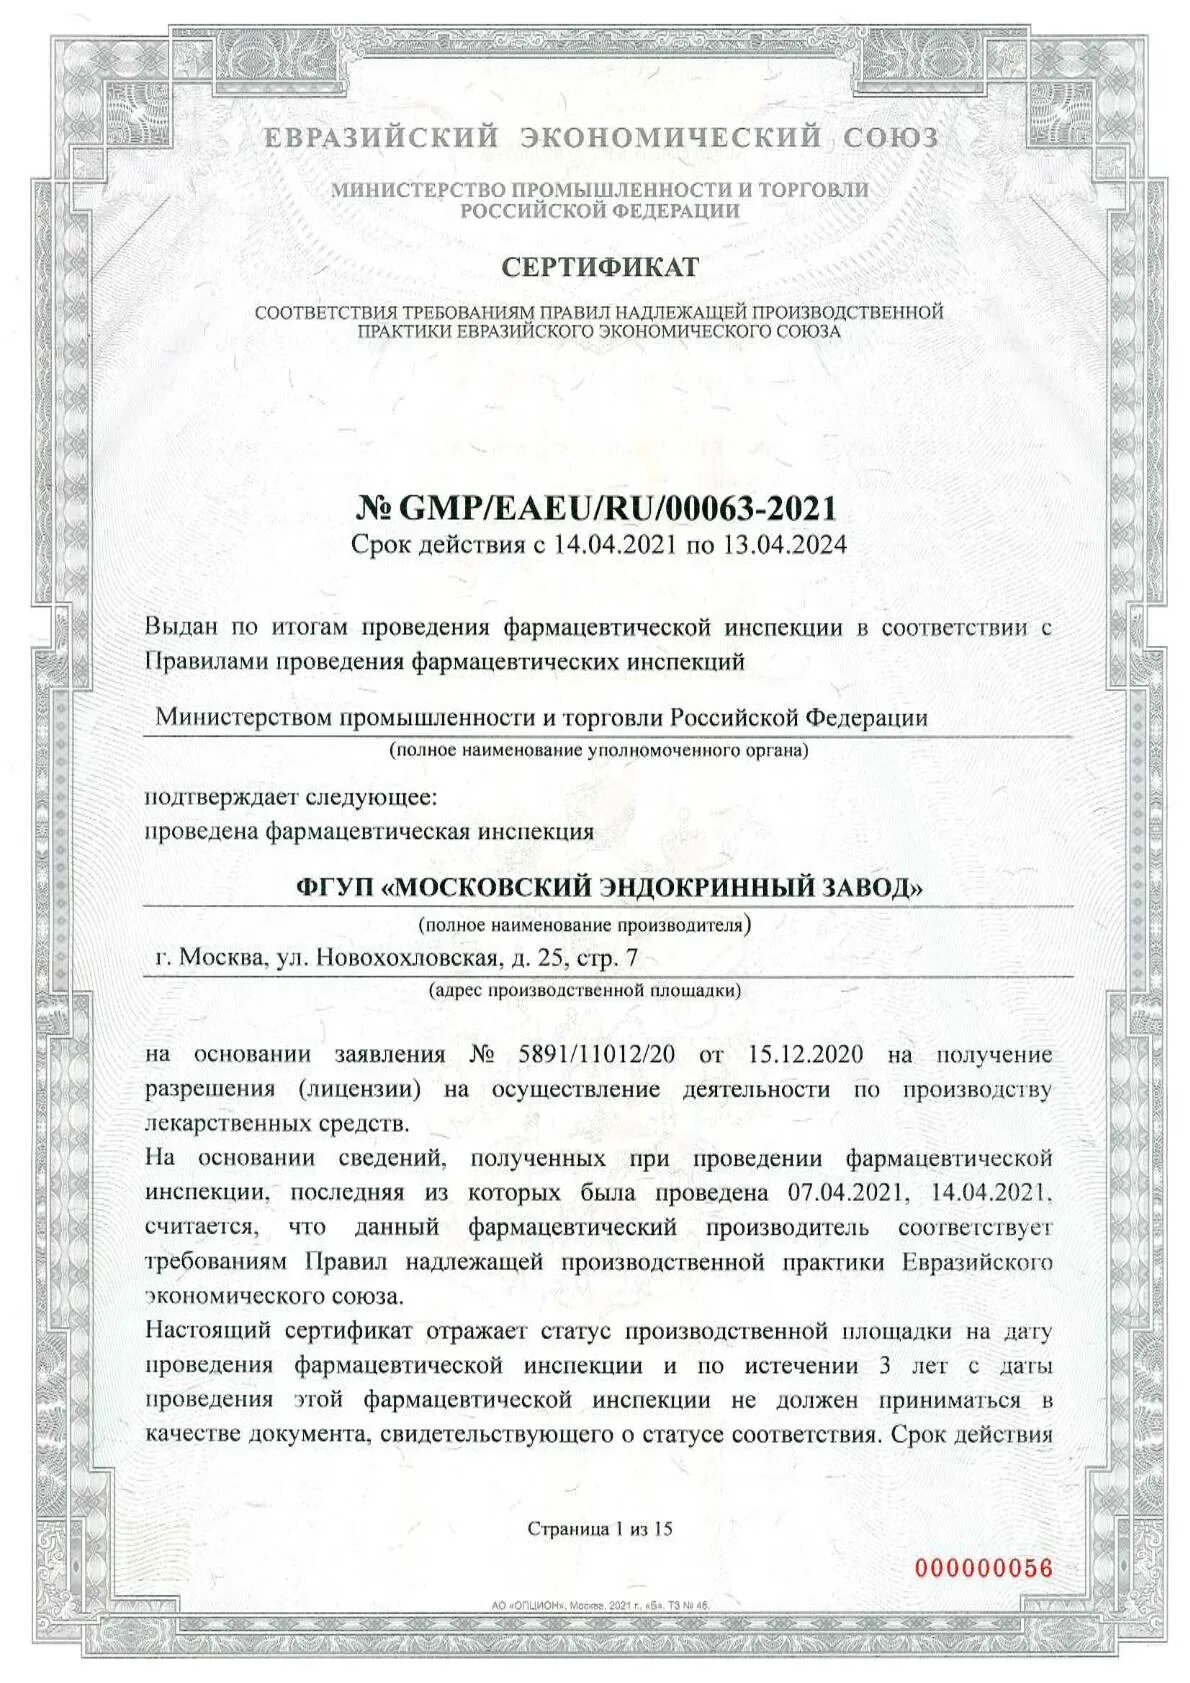 Сертификат GMP EAEU. Правила надлежащей производственной практики ЕАЭС. Надлежащей производственной практики евразийского экономического союза